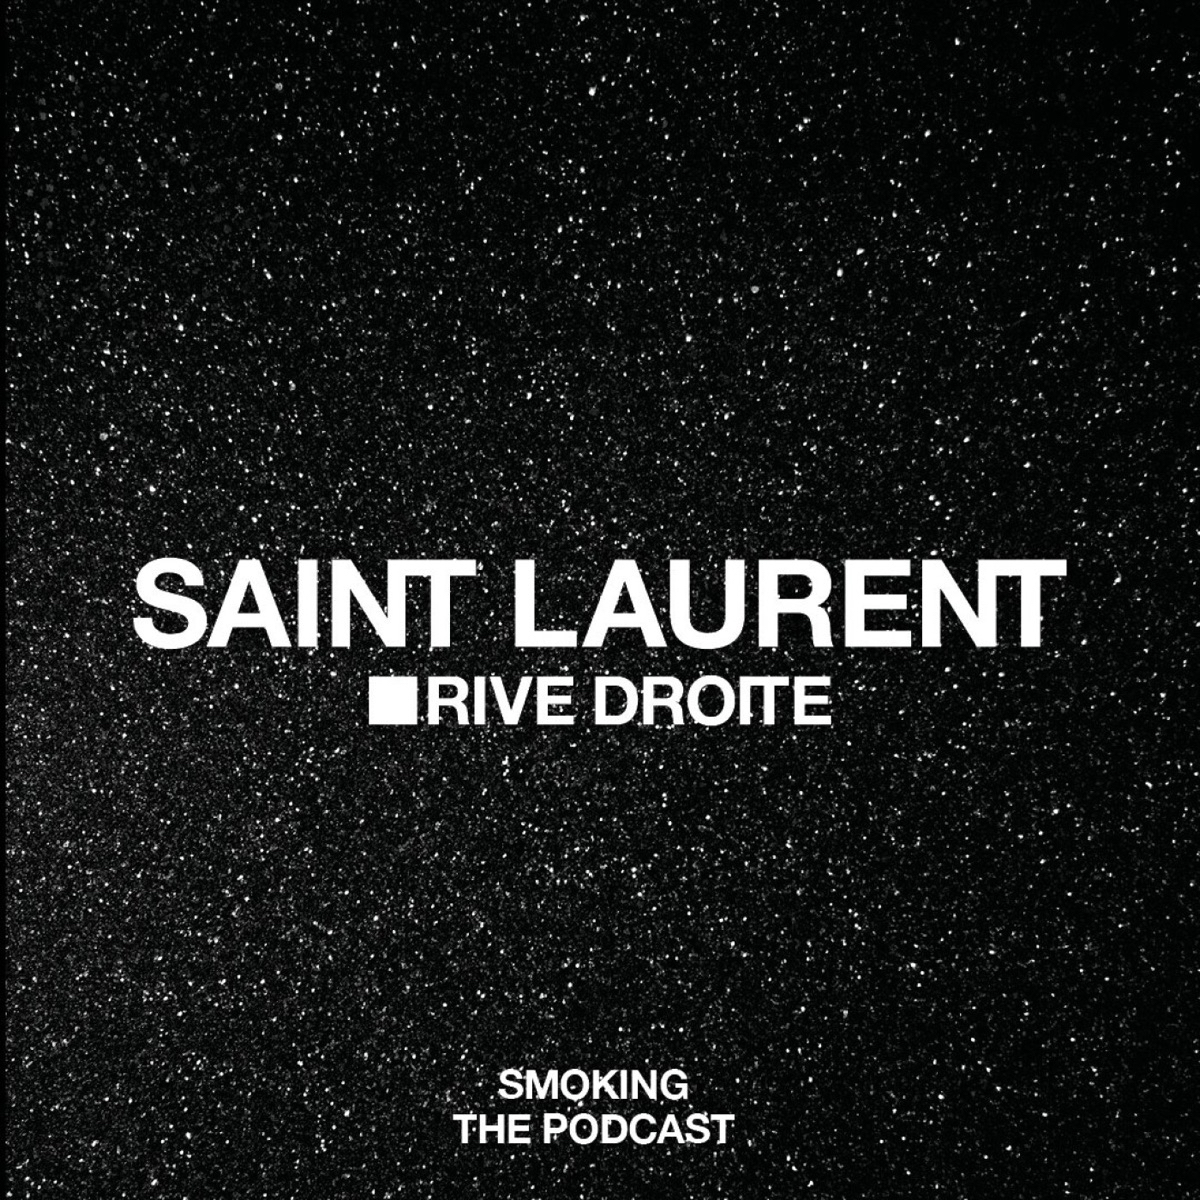 Обложка подкаста Saint Laurent